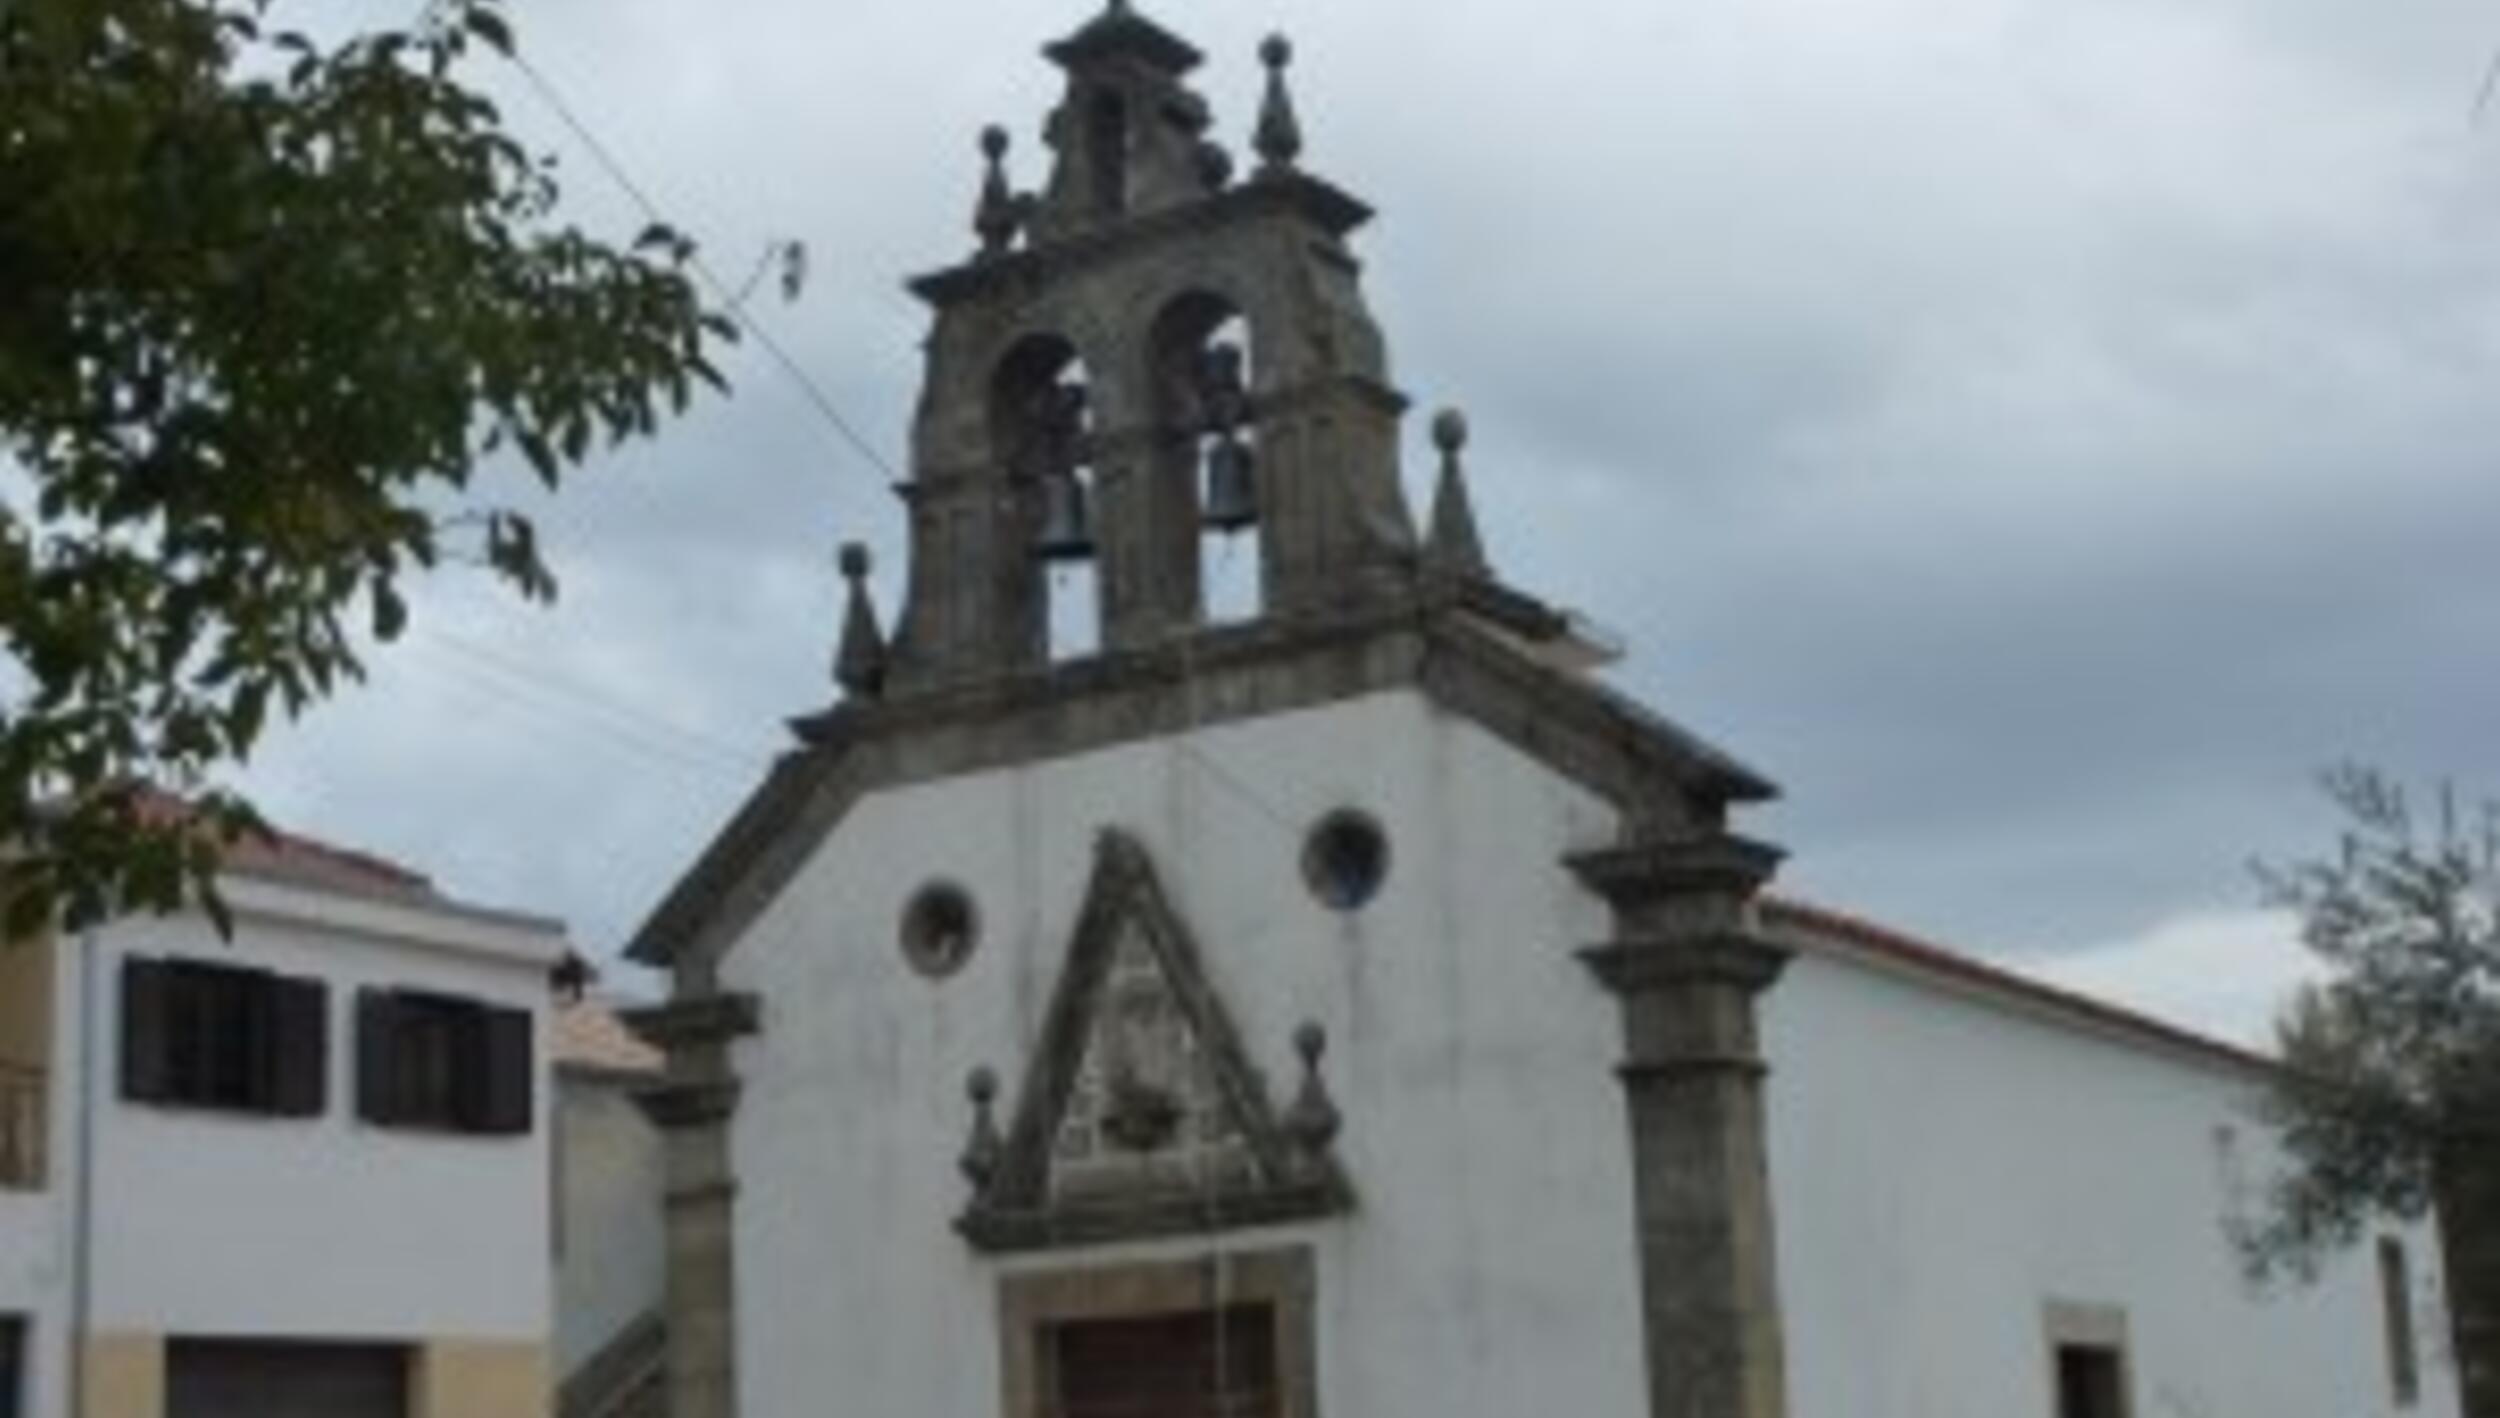 Igreja de Sanceriz / Igreja de São Ciriaco